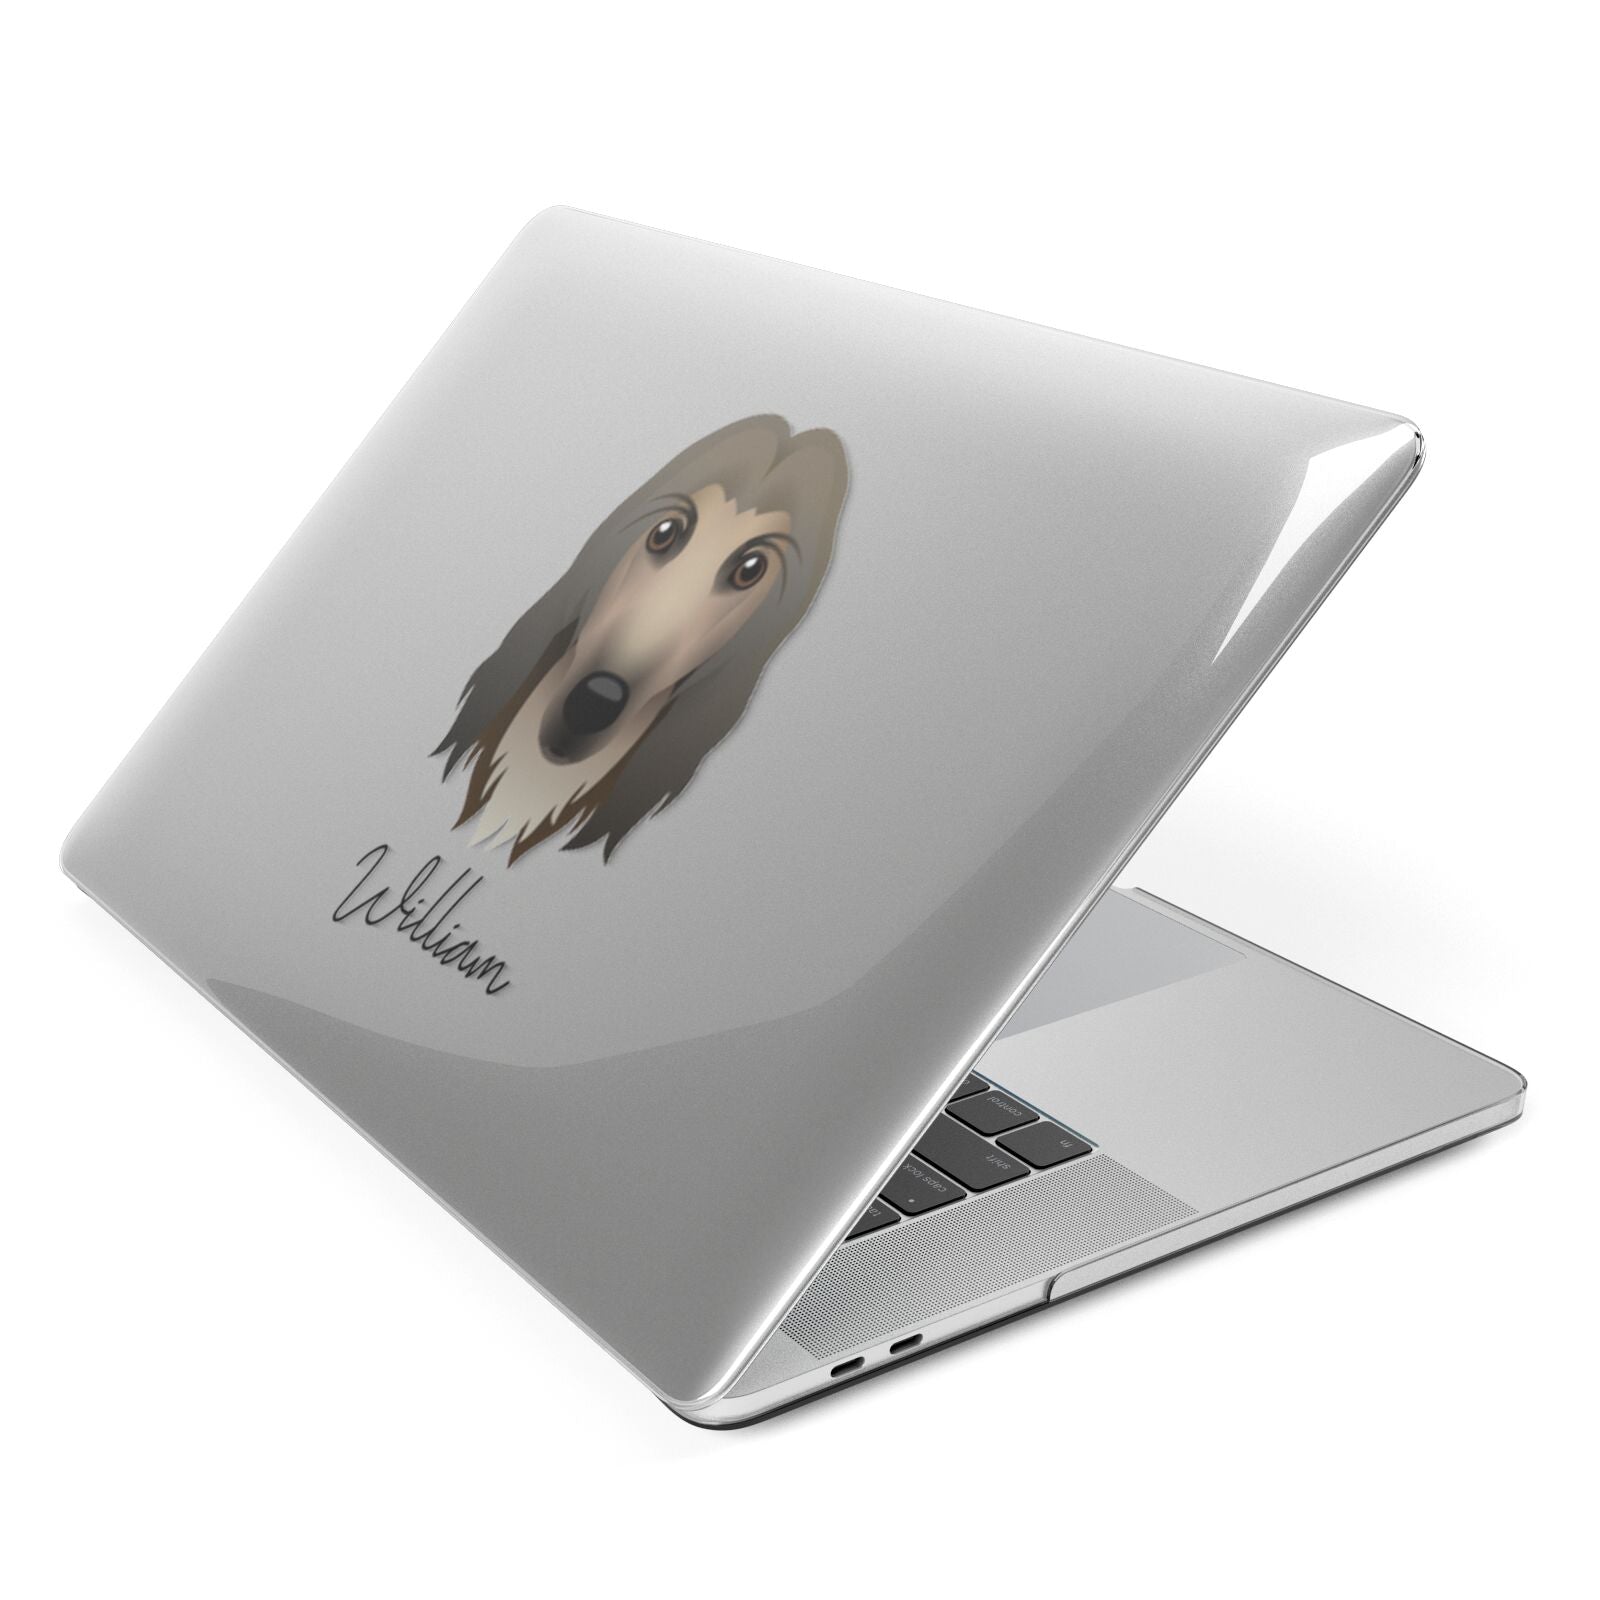 Afghan Hound Personalised Apple MacBook Case Side View